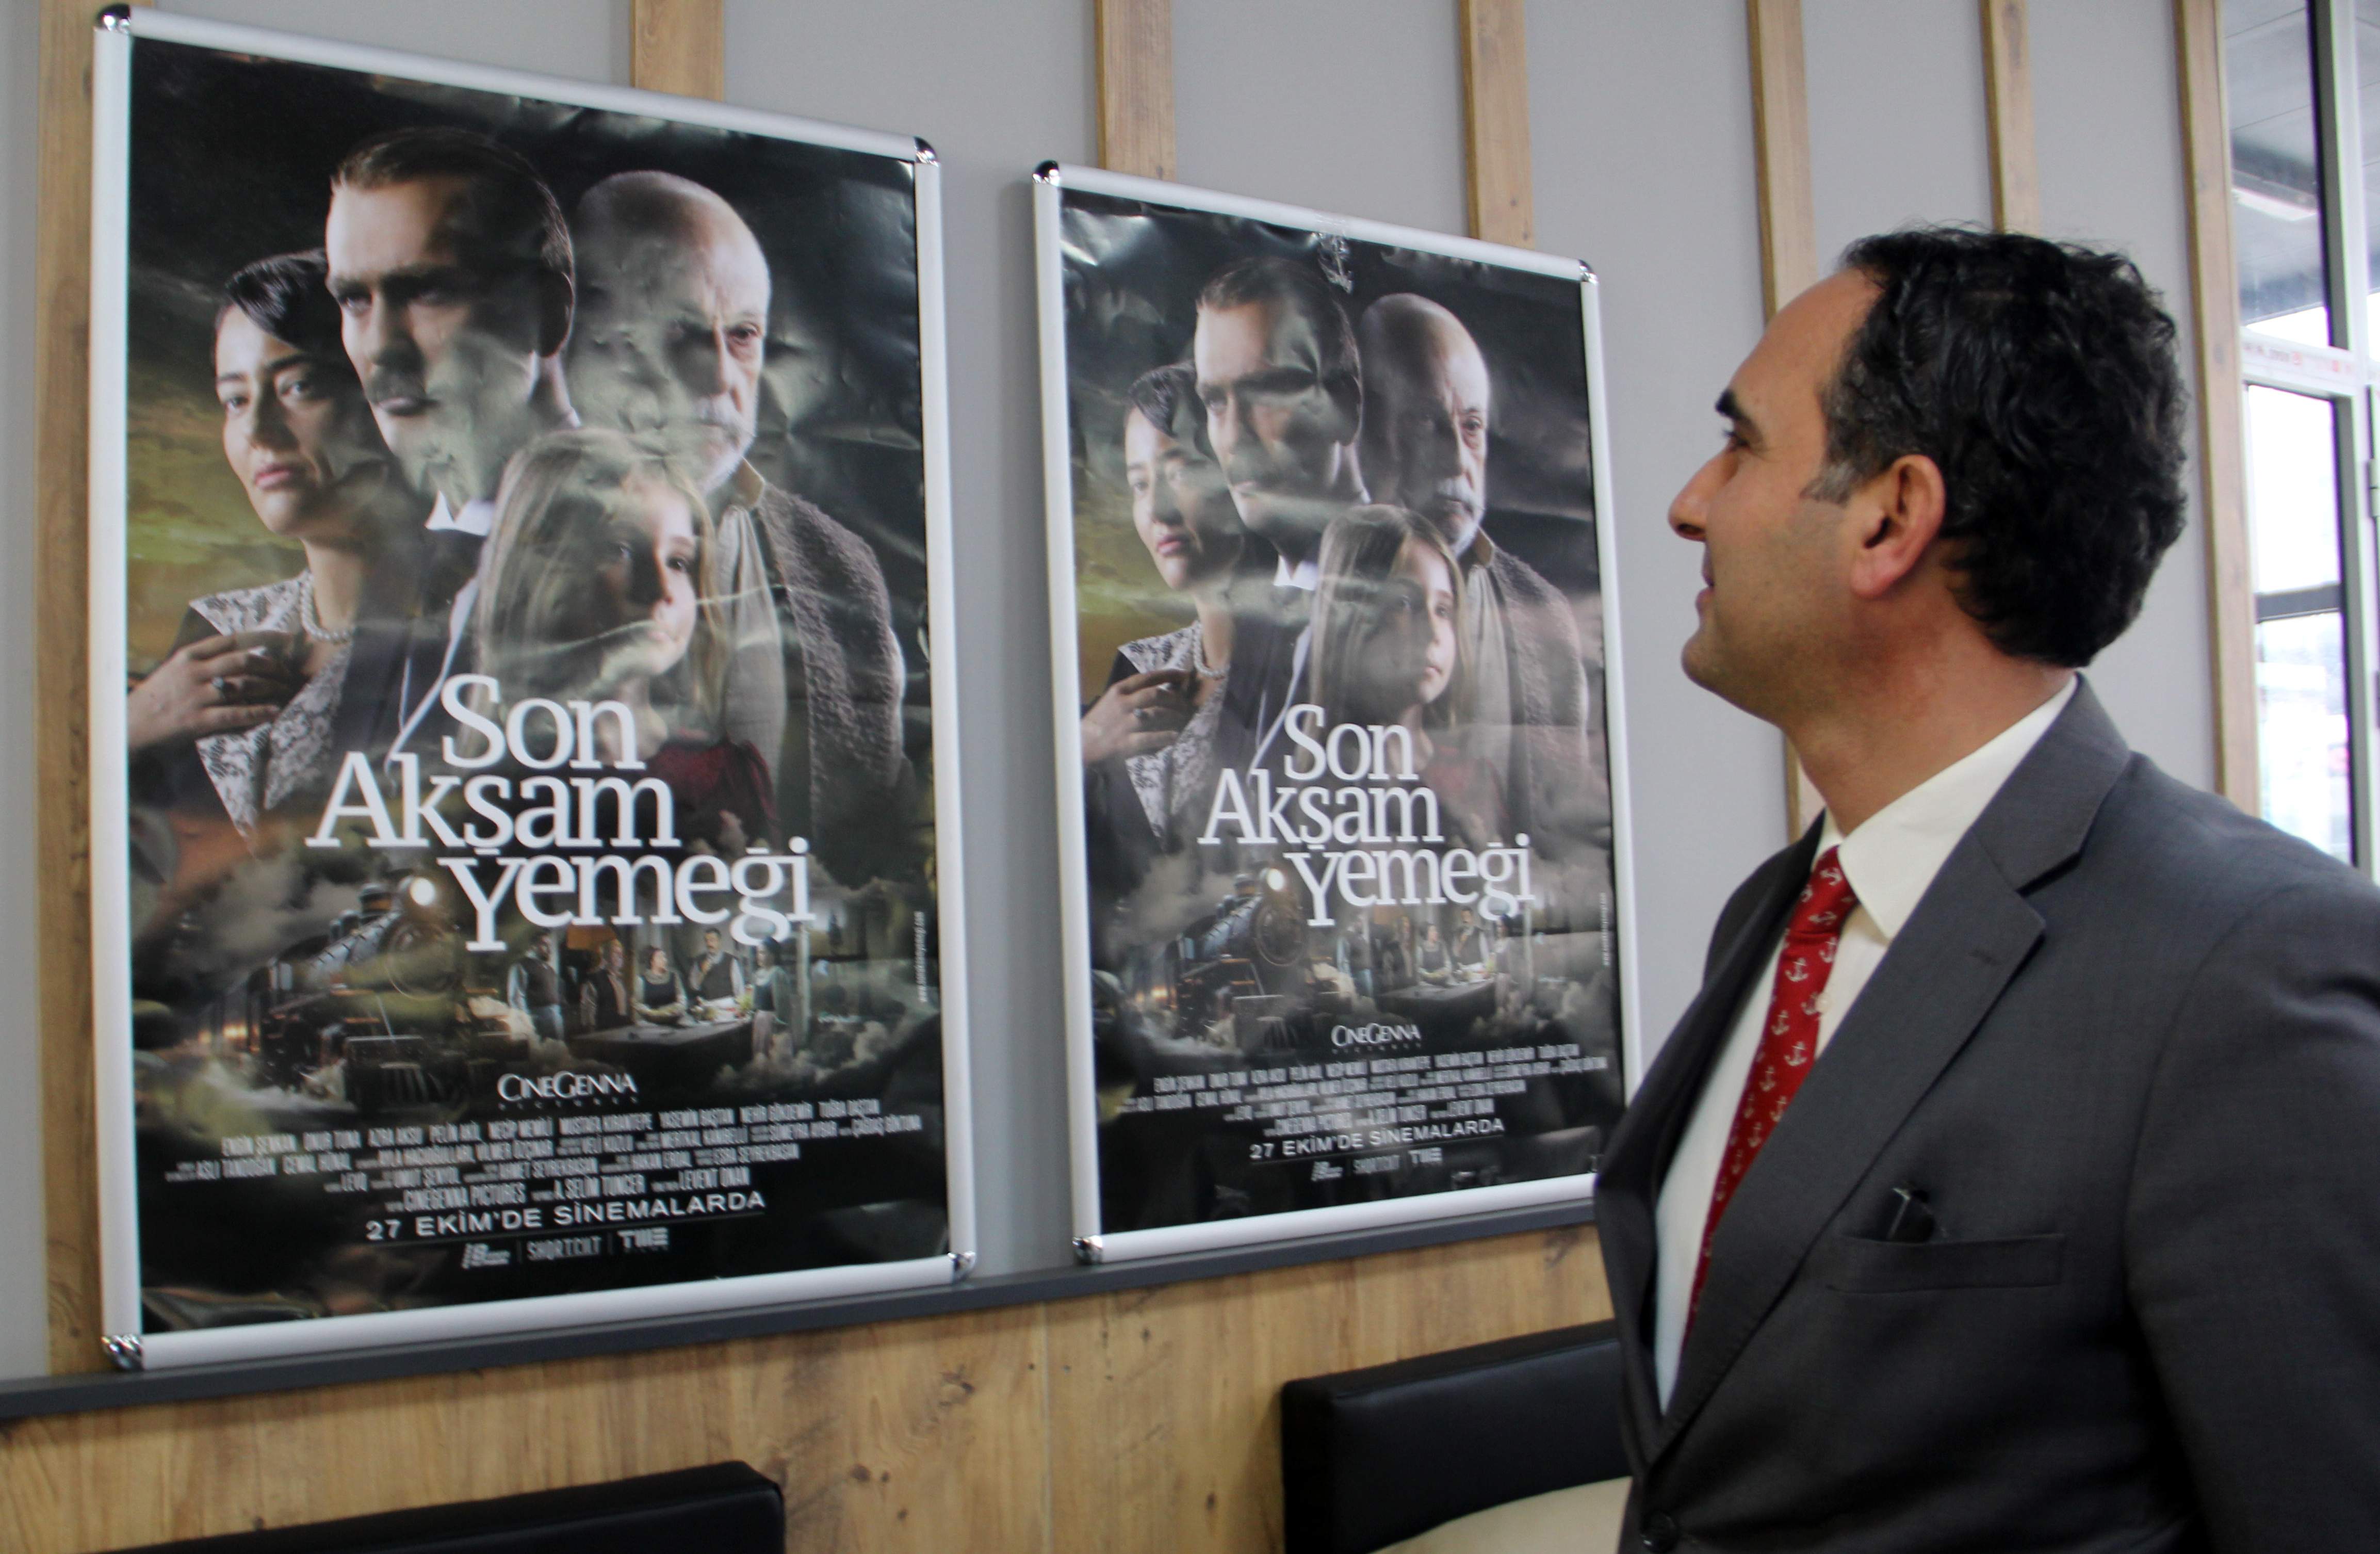 Sinop Valisi Özarslan, “Son Akşam Yemeği” filmini izledi